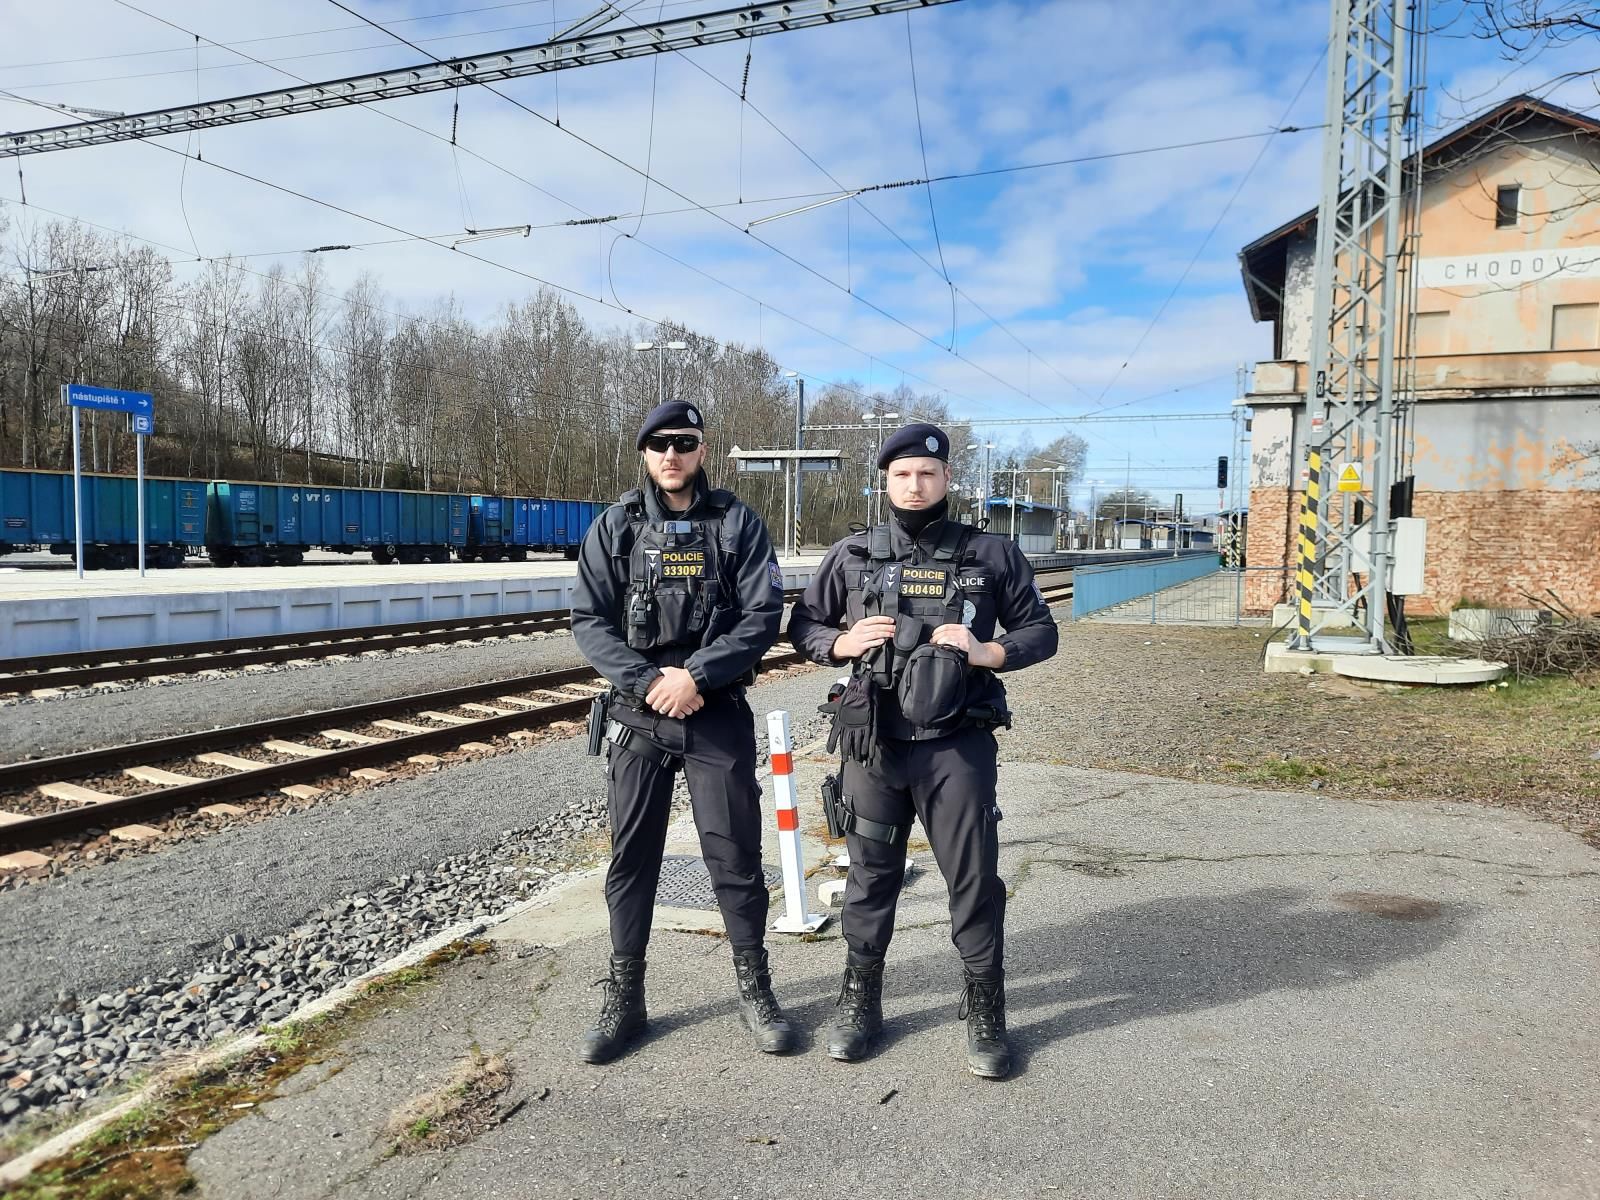 Karlovarsko: Policisté se zaměřili na kontroly nádraží, vlakové spoje a železniční tratě